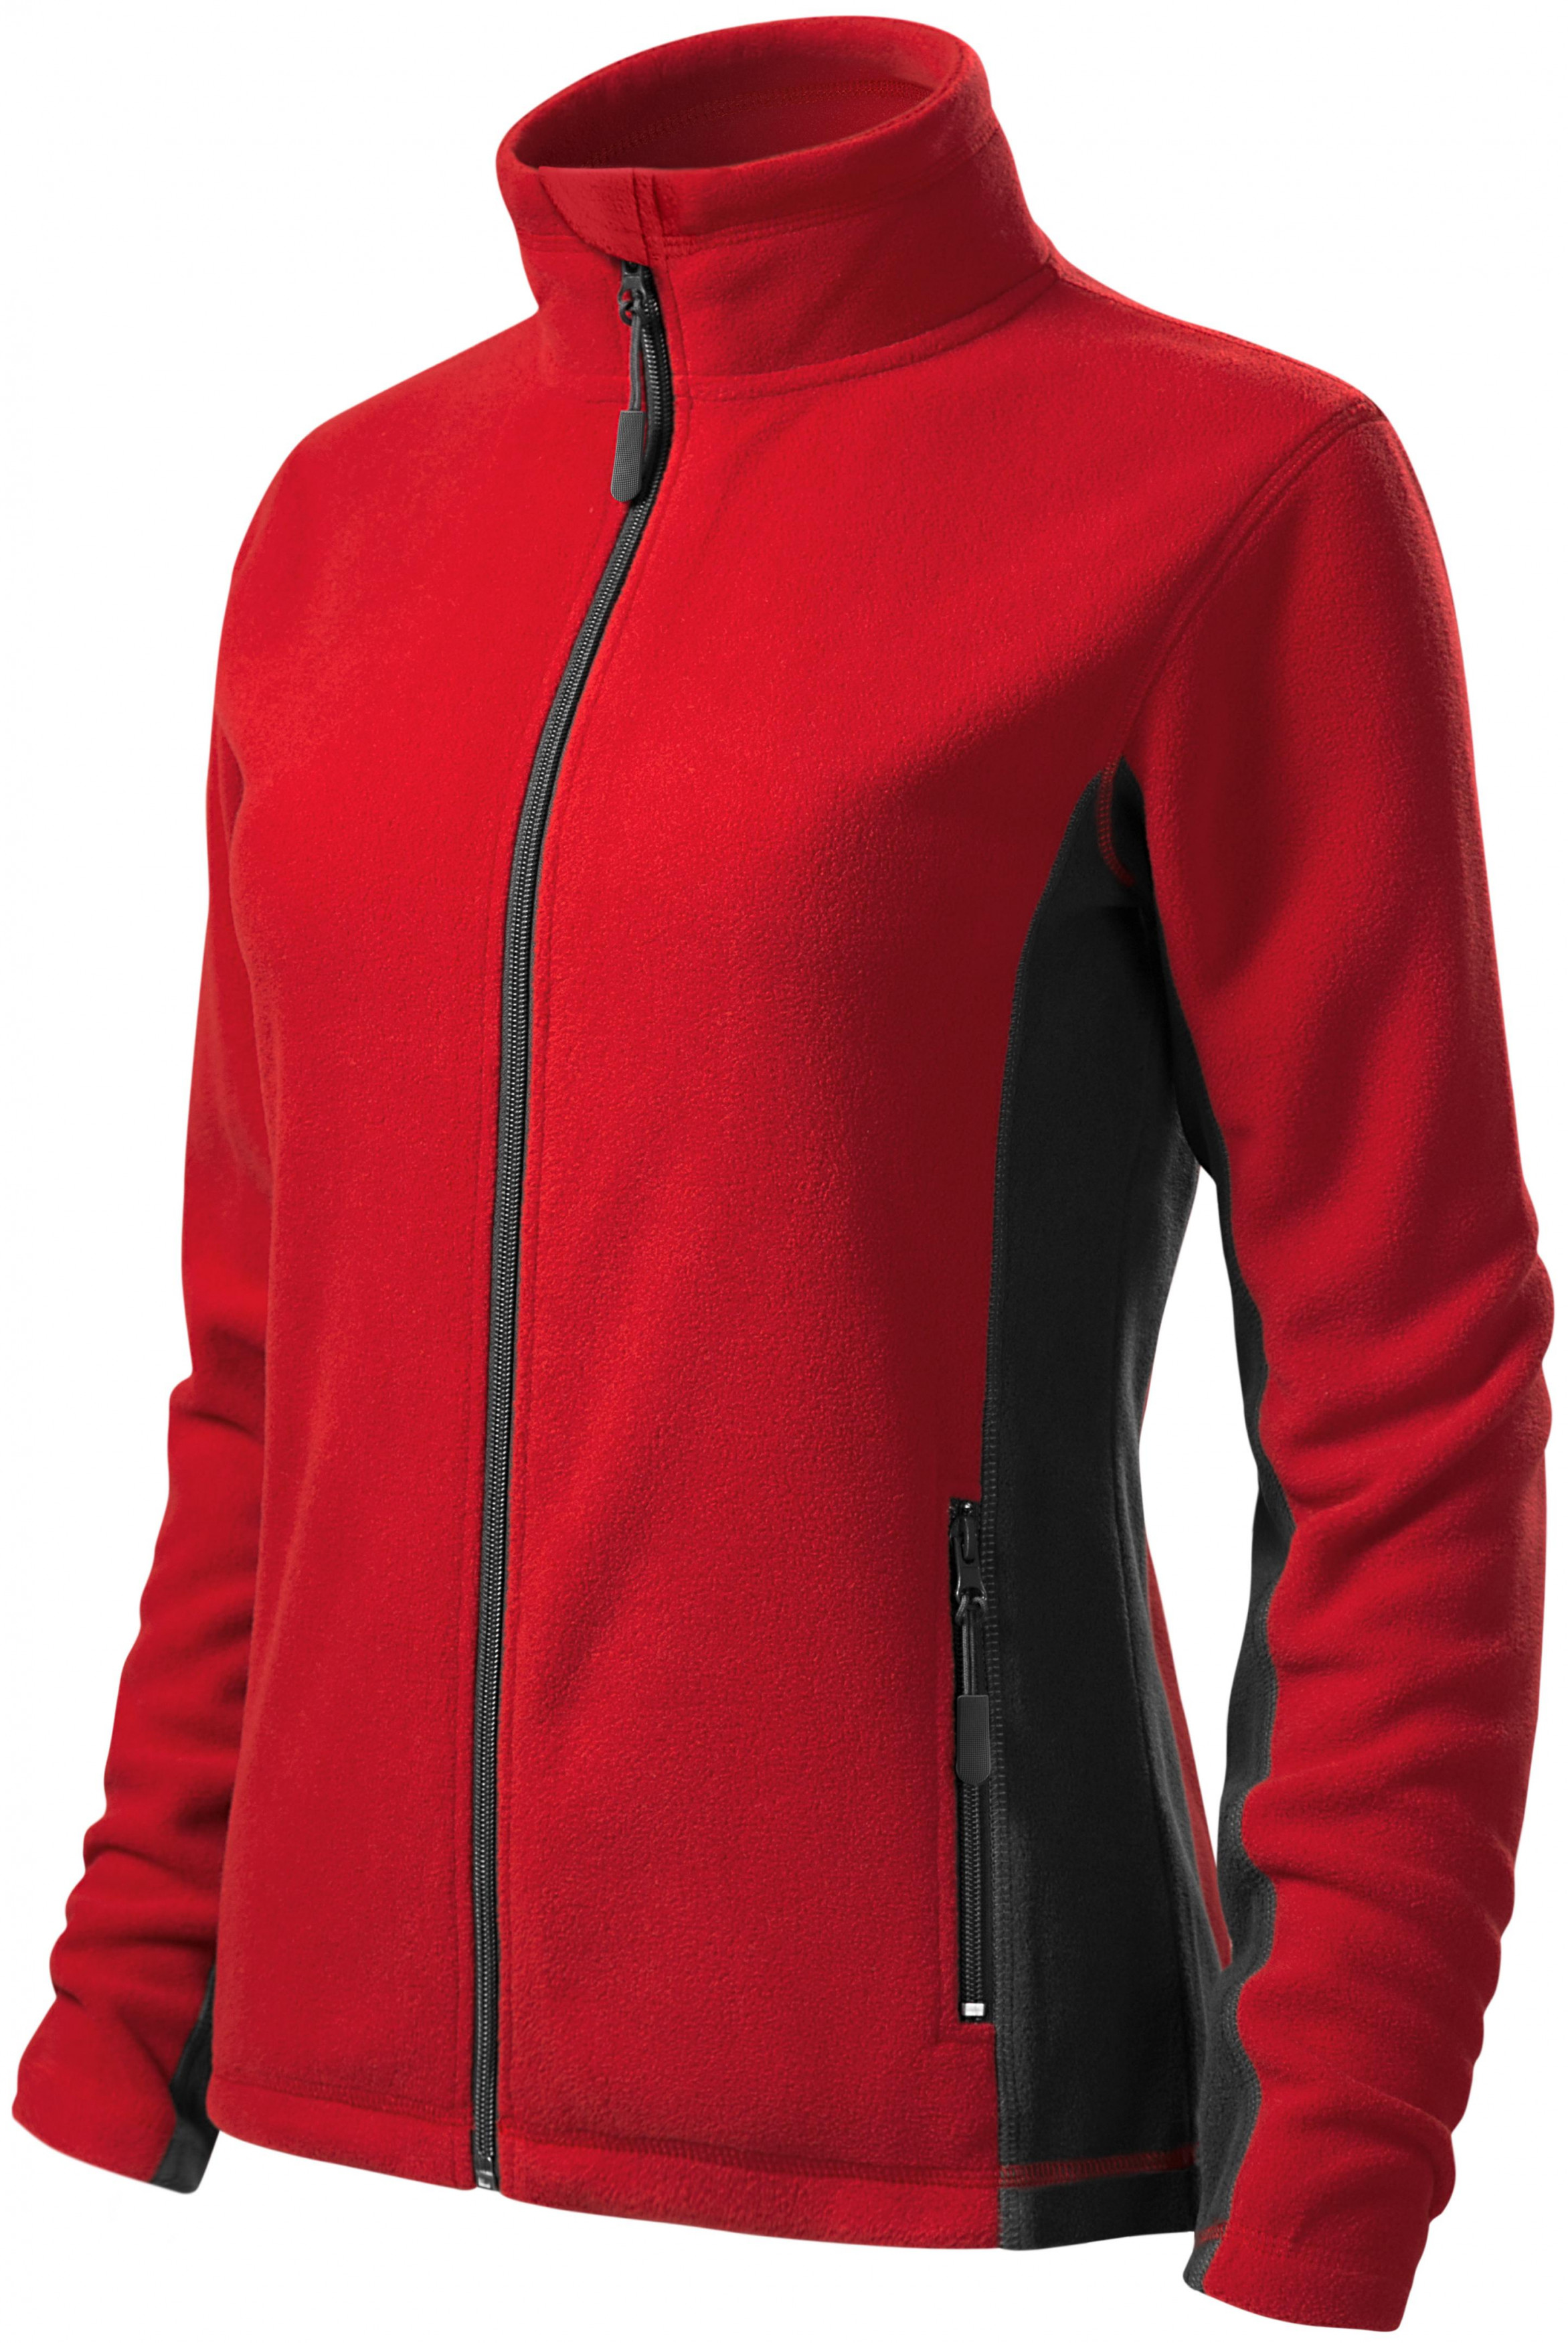 Dámska fleecová bunda kontrastná, červená, XL